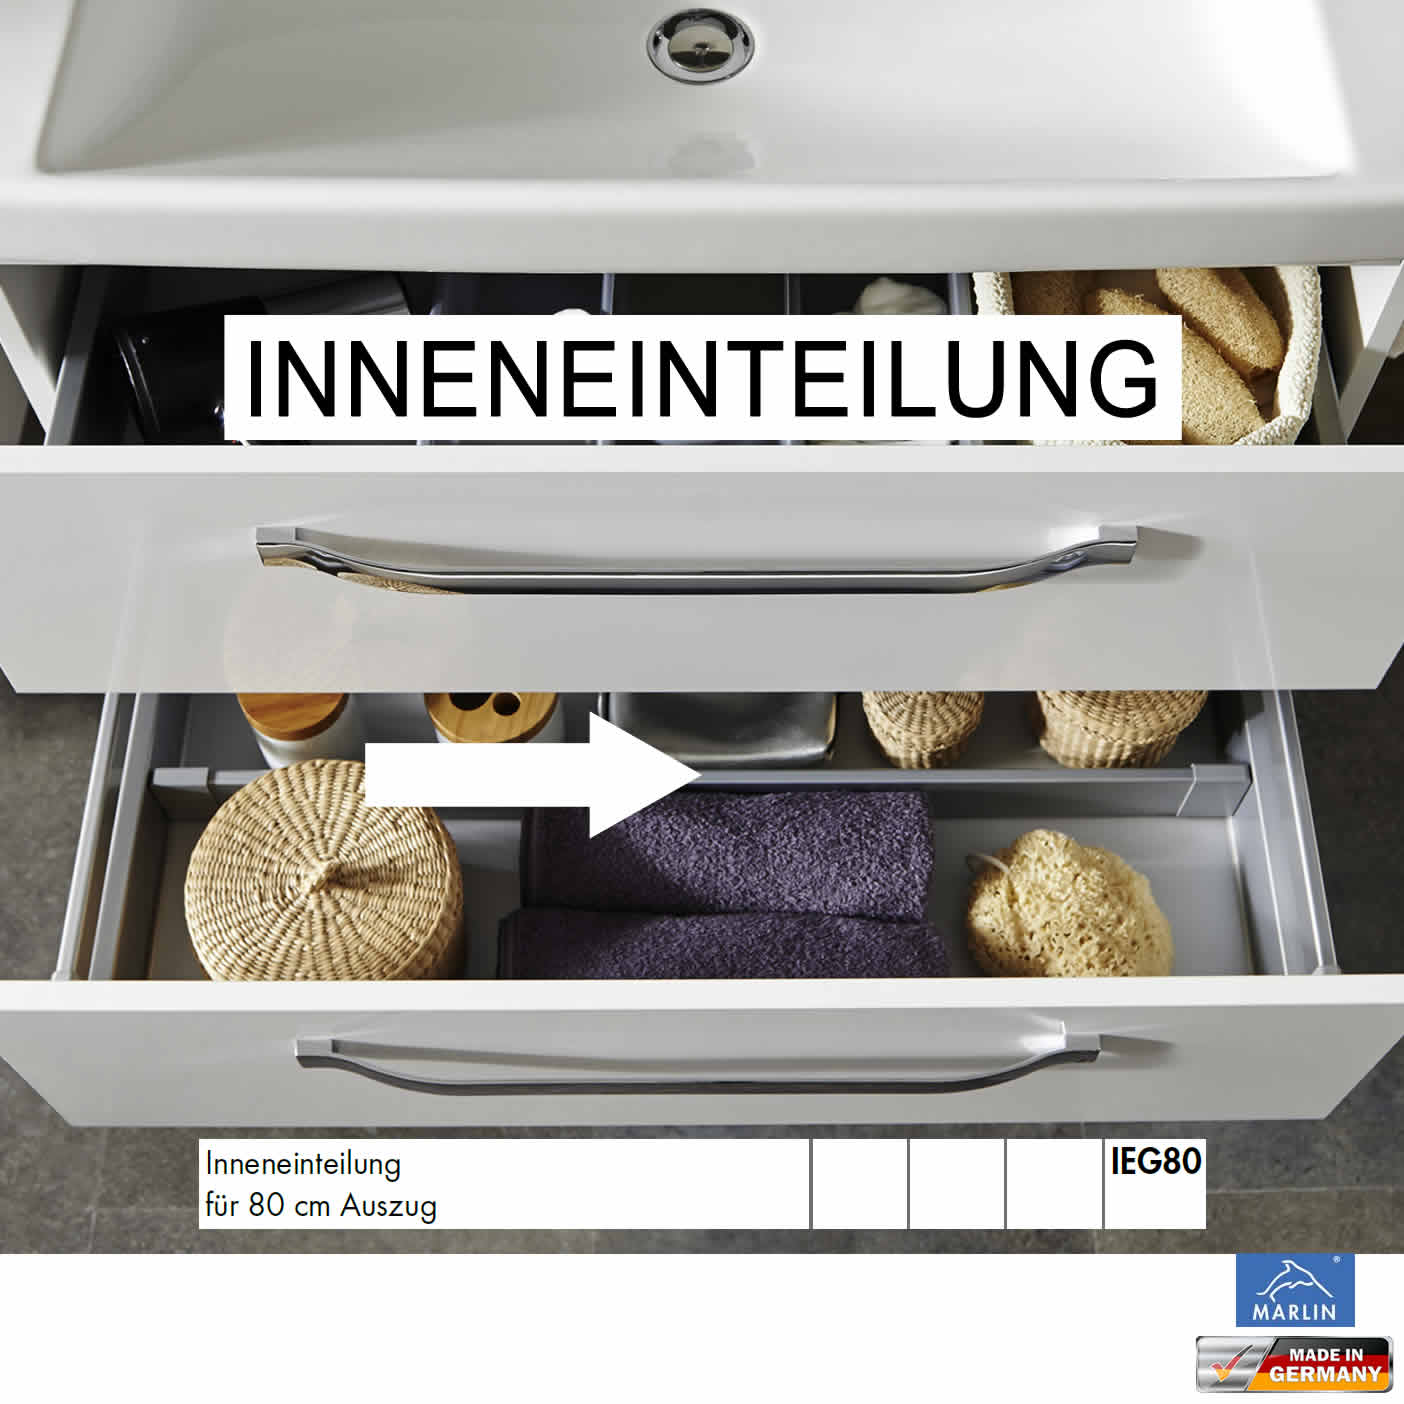 Inneneinteilung für unteren Auszug für Waschtischunterschrank - 80 cm -  IEG80 | Impulsbad